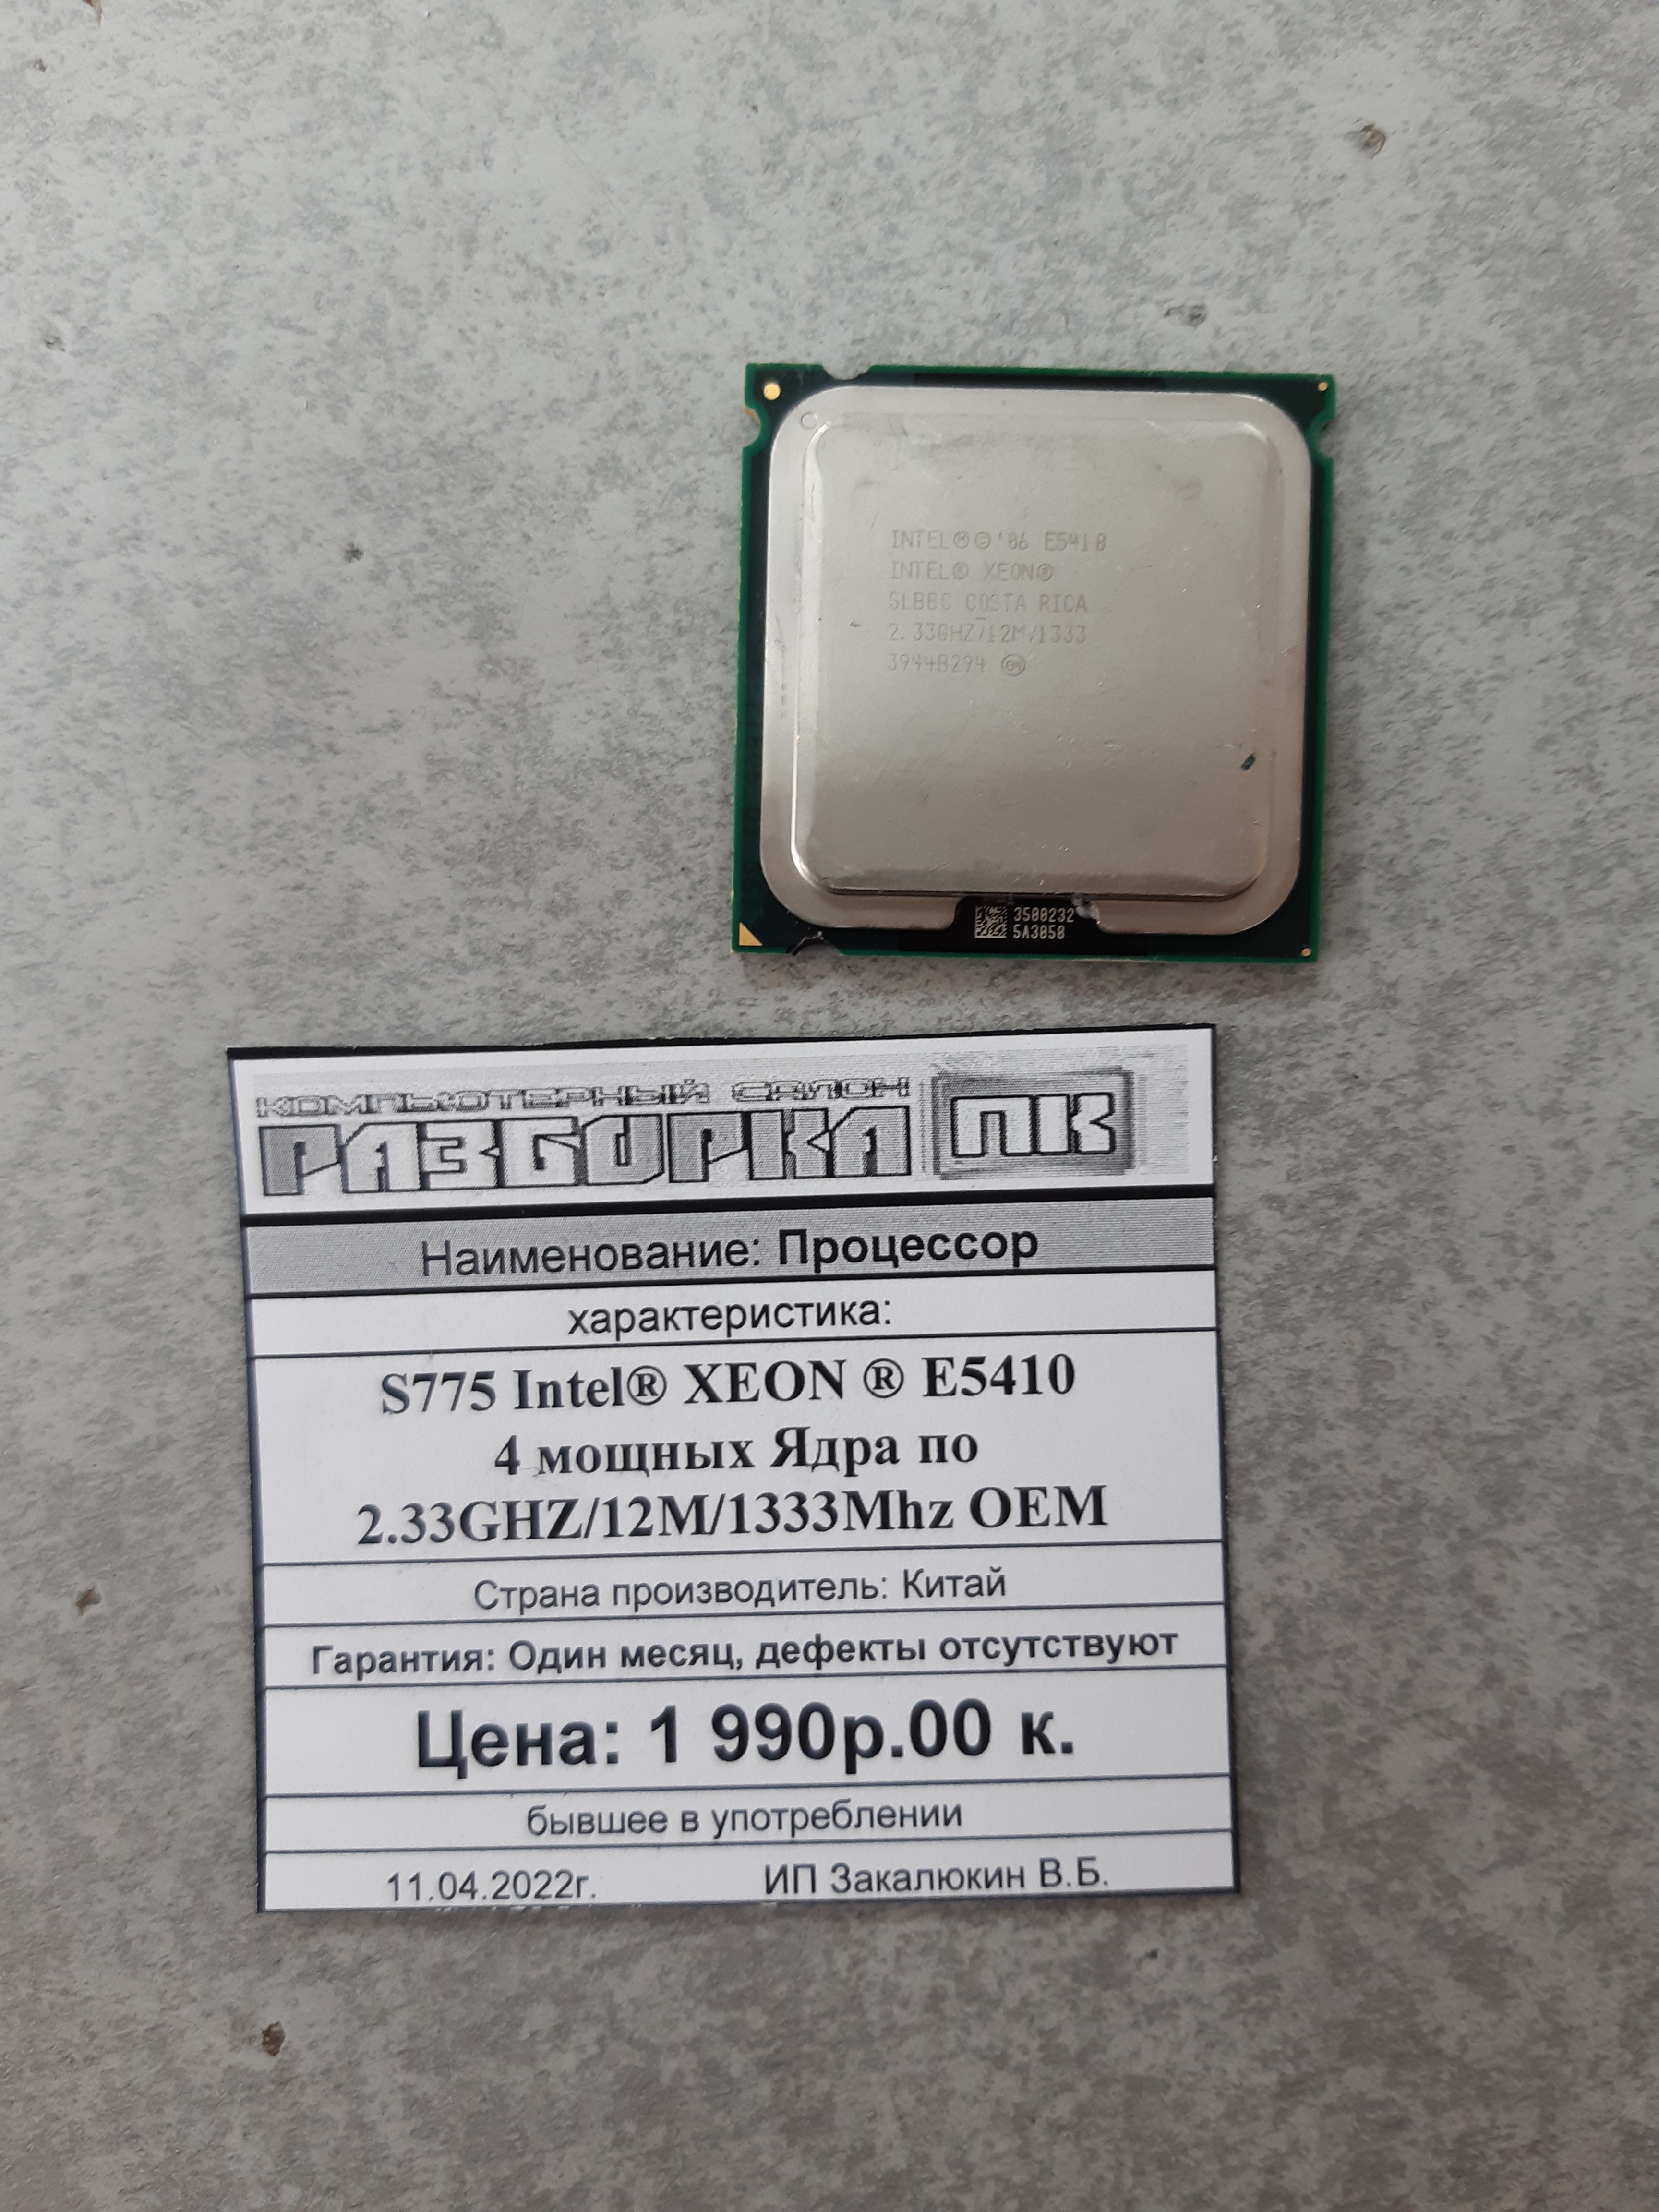 Процессор S775 Intel® XEON ® E5410